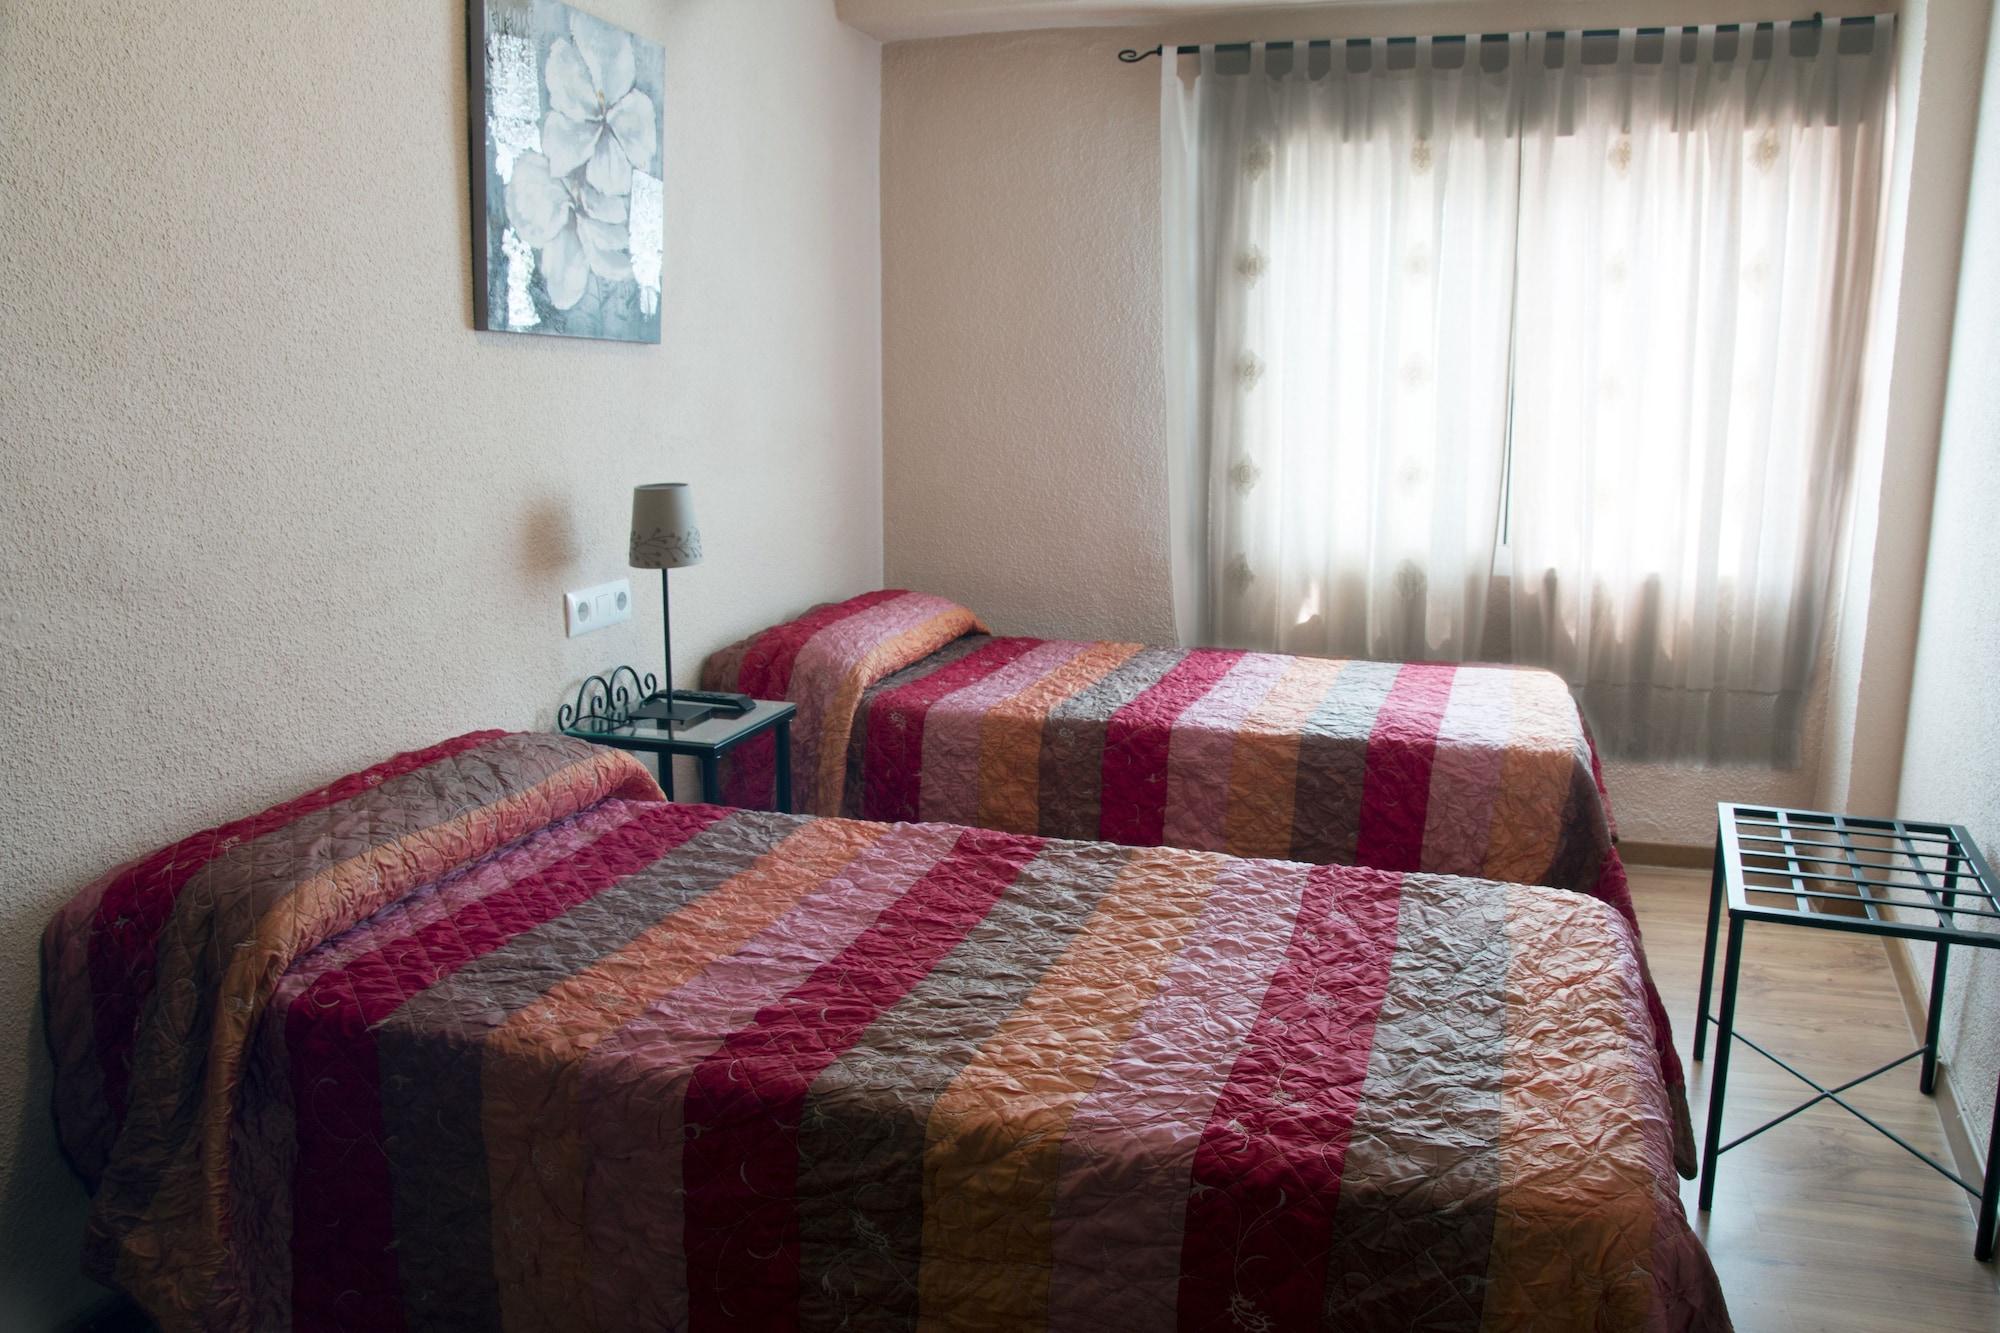 Hotel Hospederia Luis De Gongora Kordoba Zewnętrze zdjęcie